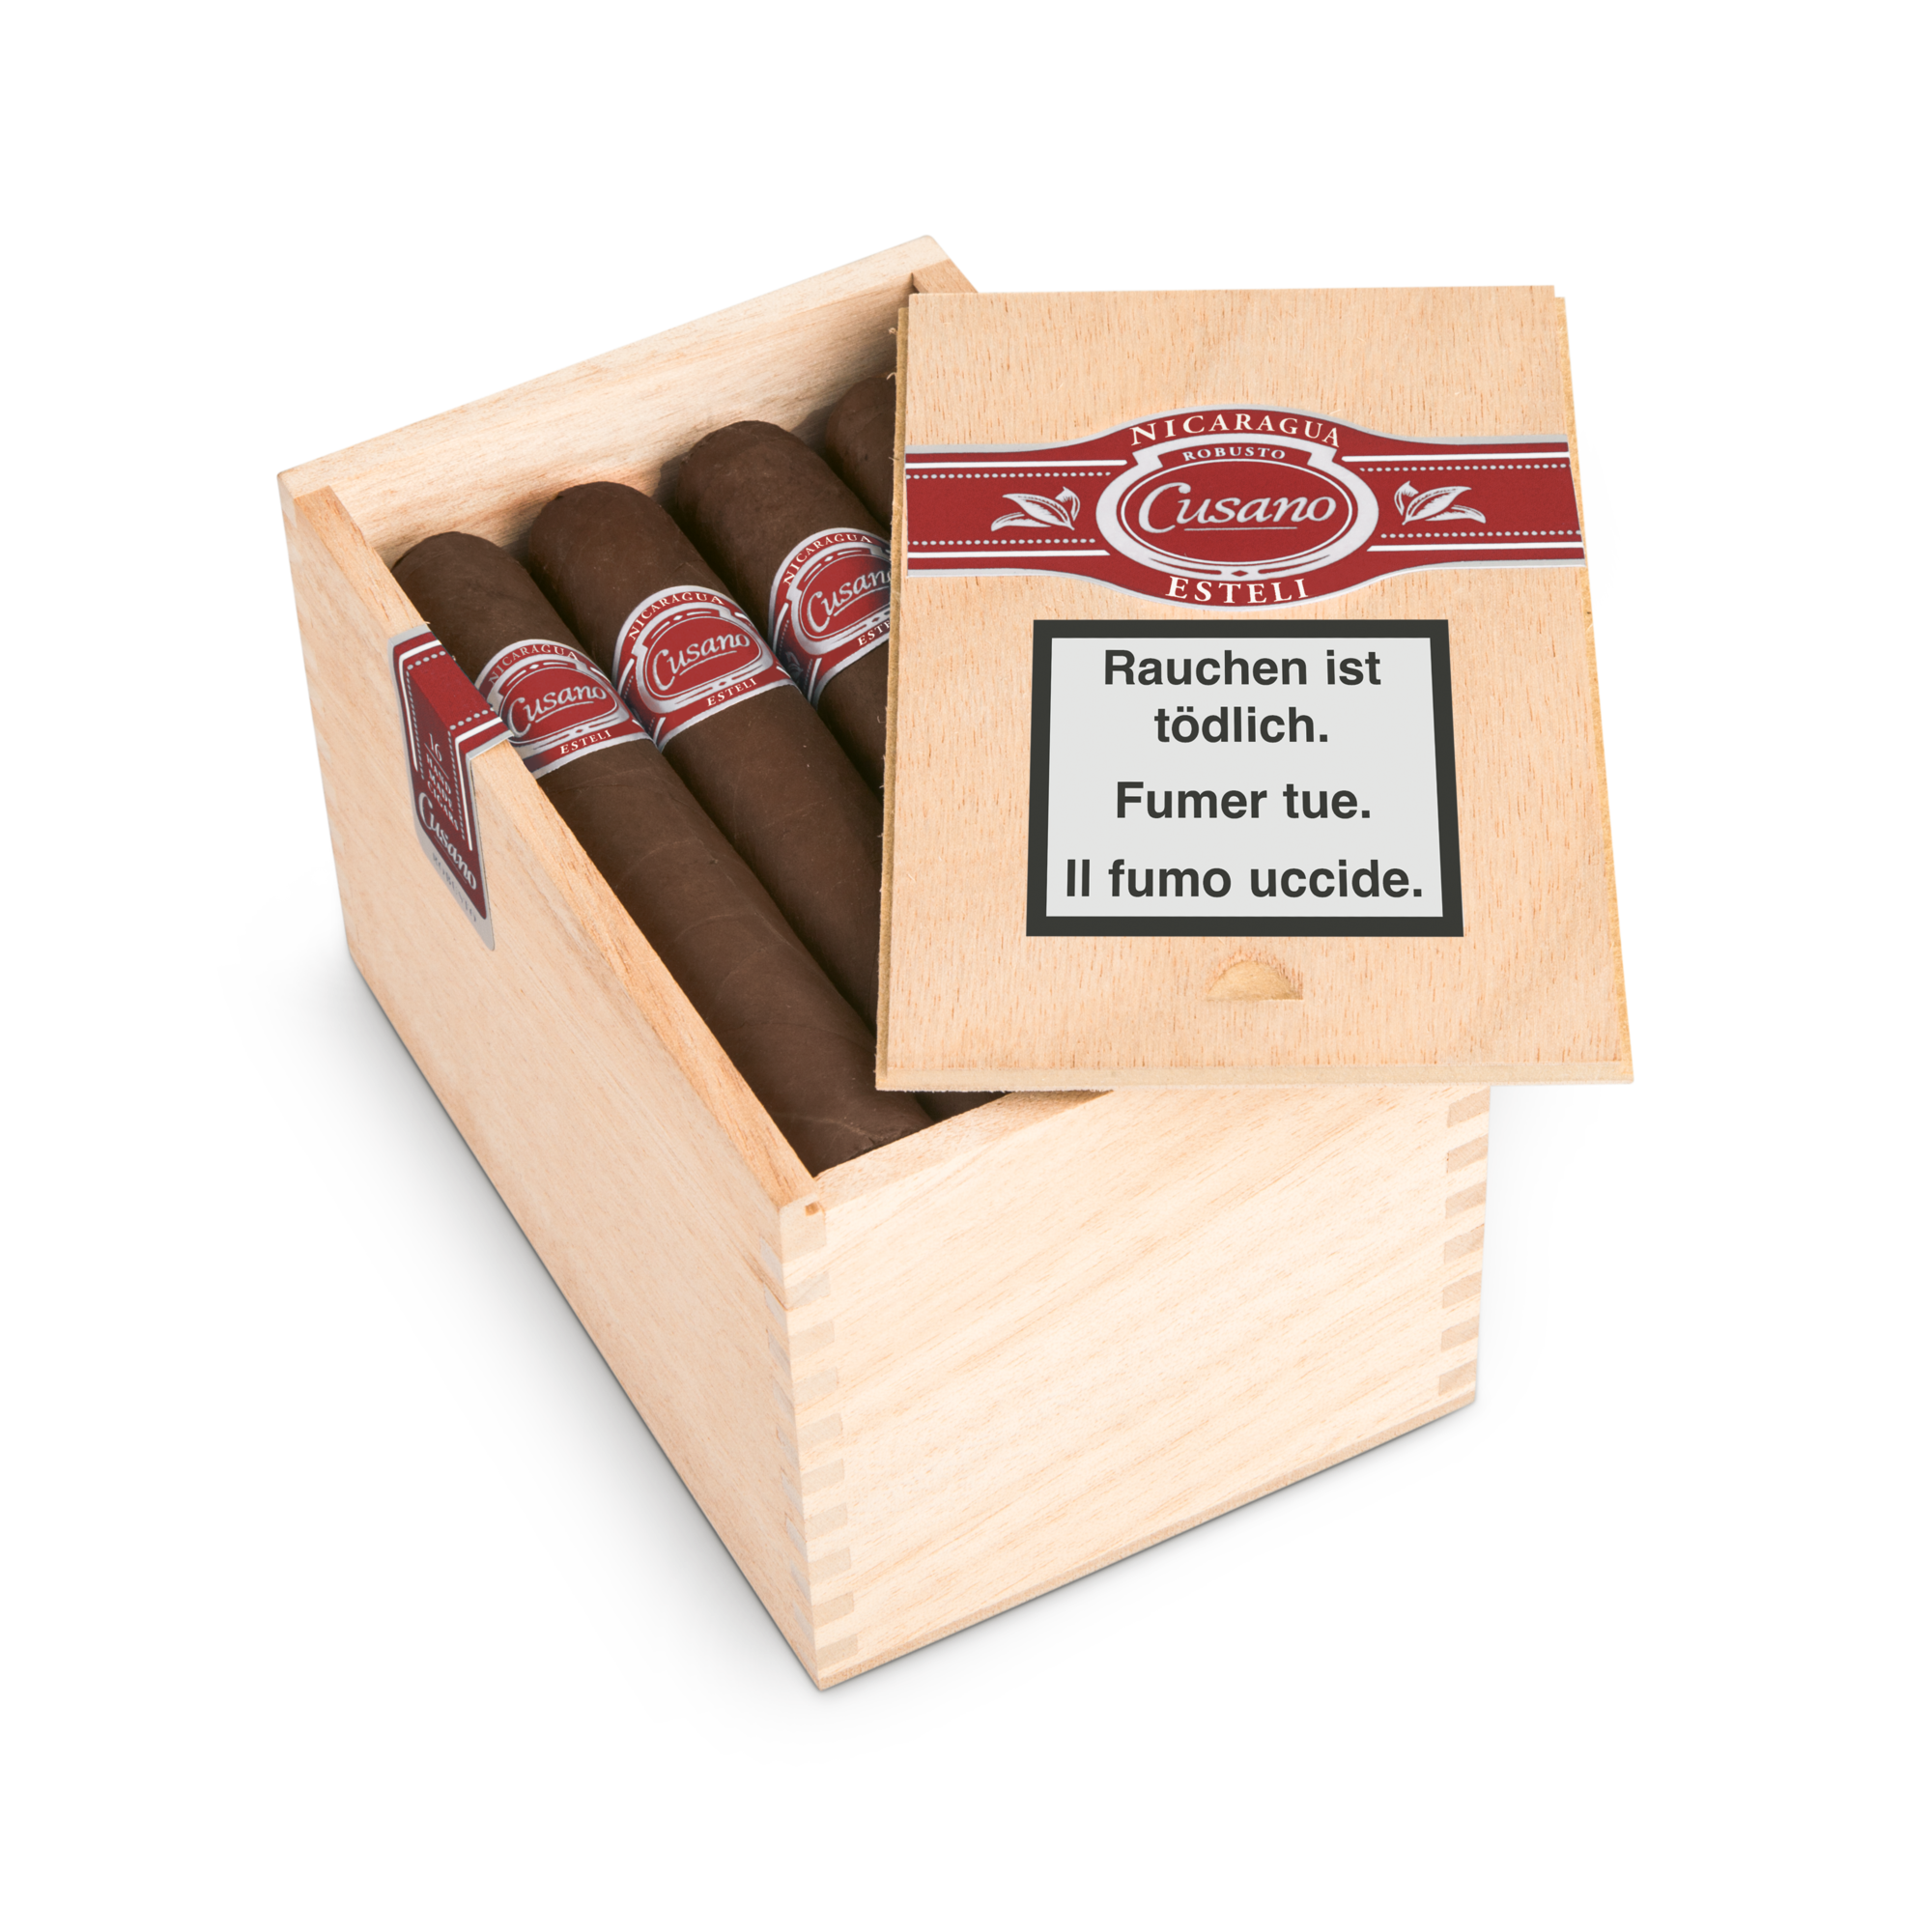 16er Kiste Cusano Dominicana Nicaragua Robusto Zigarren, Deckel offen